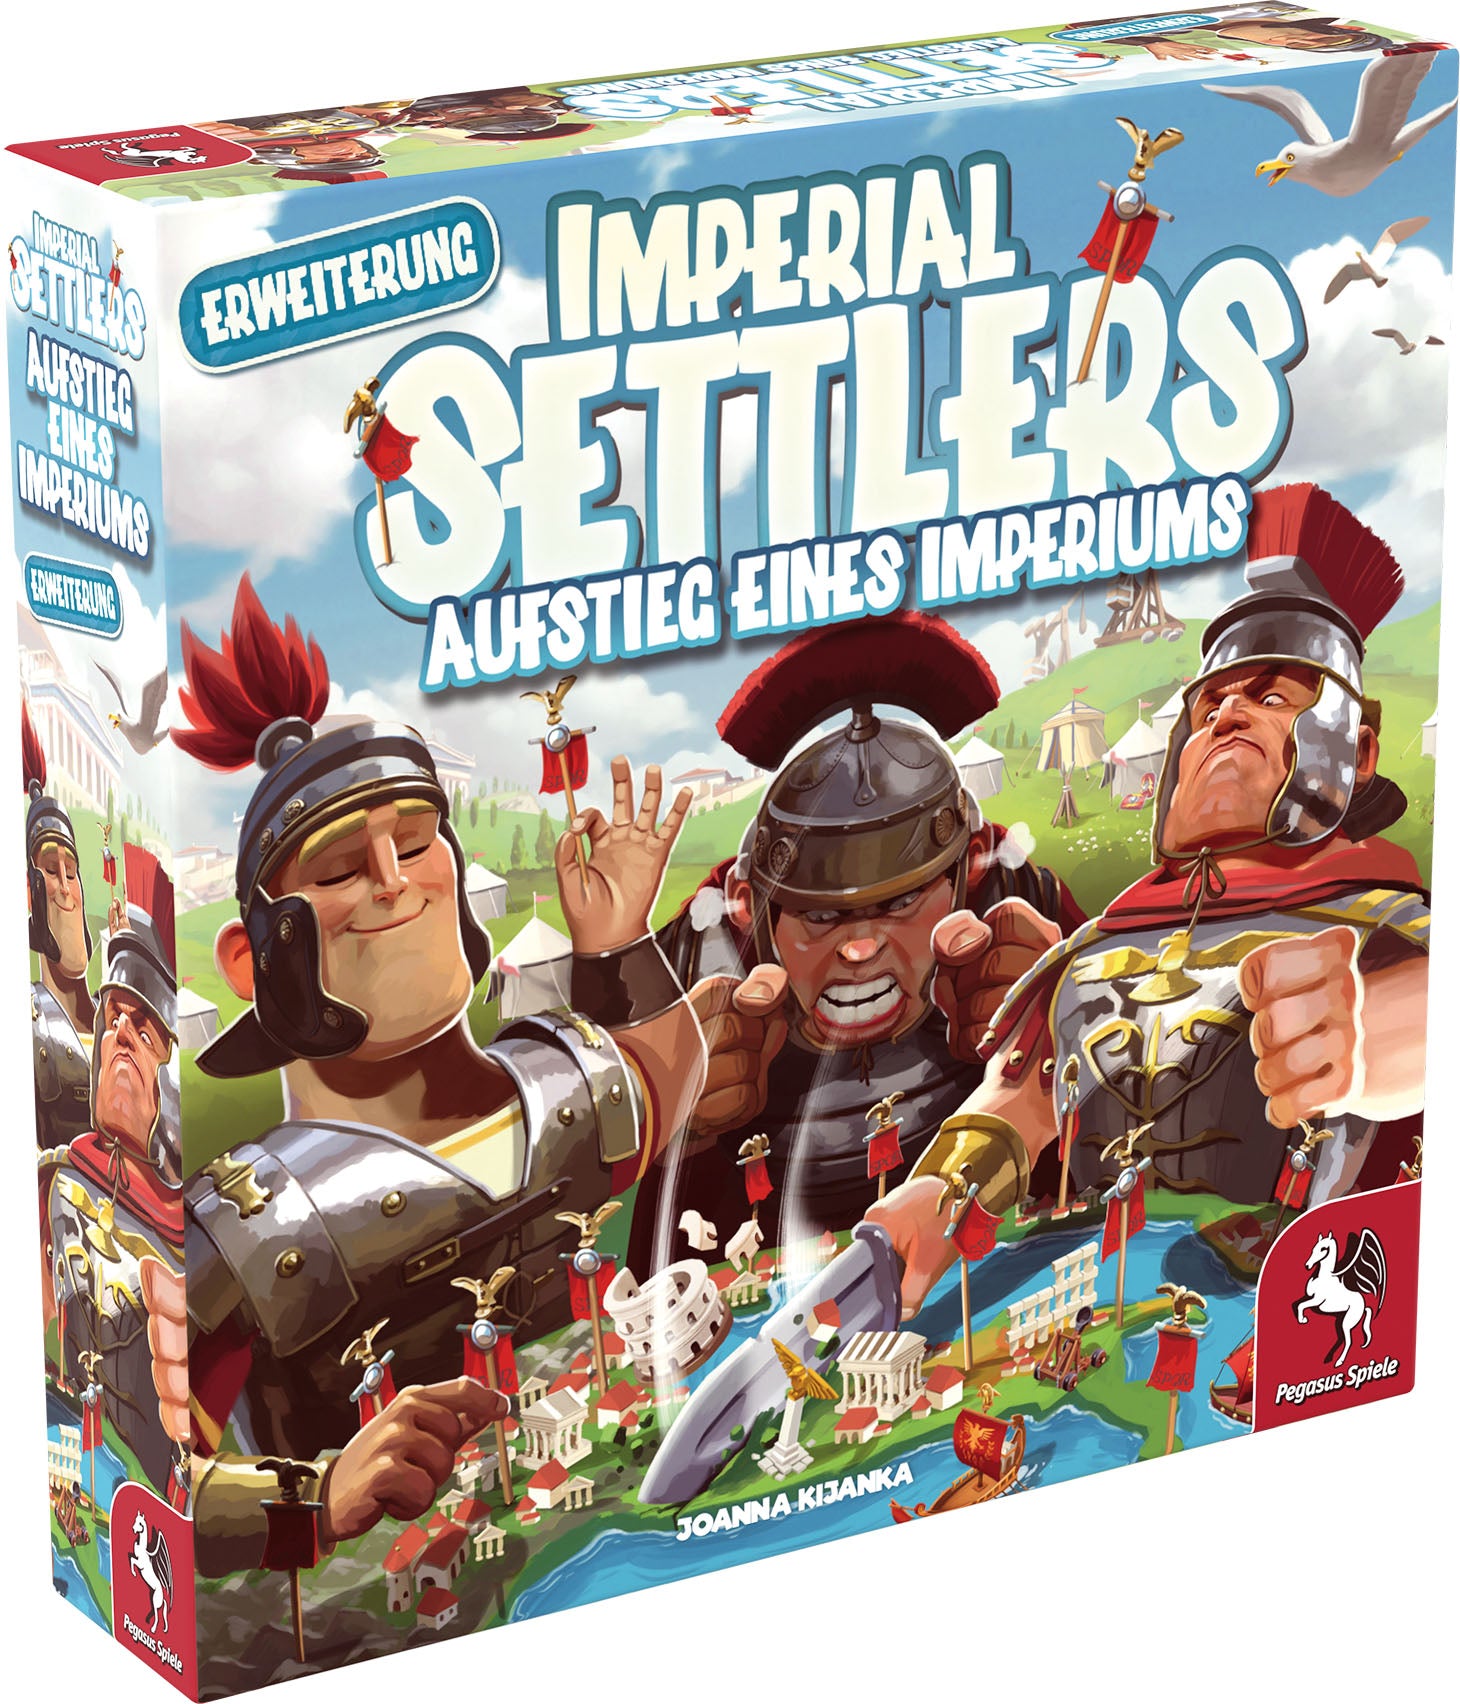 Imperial Settlers: Aufstieg eines Imperiums